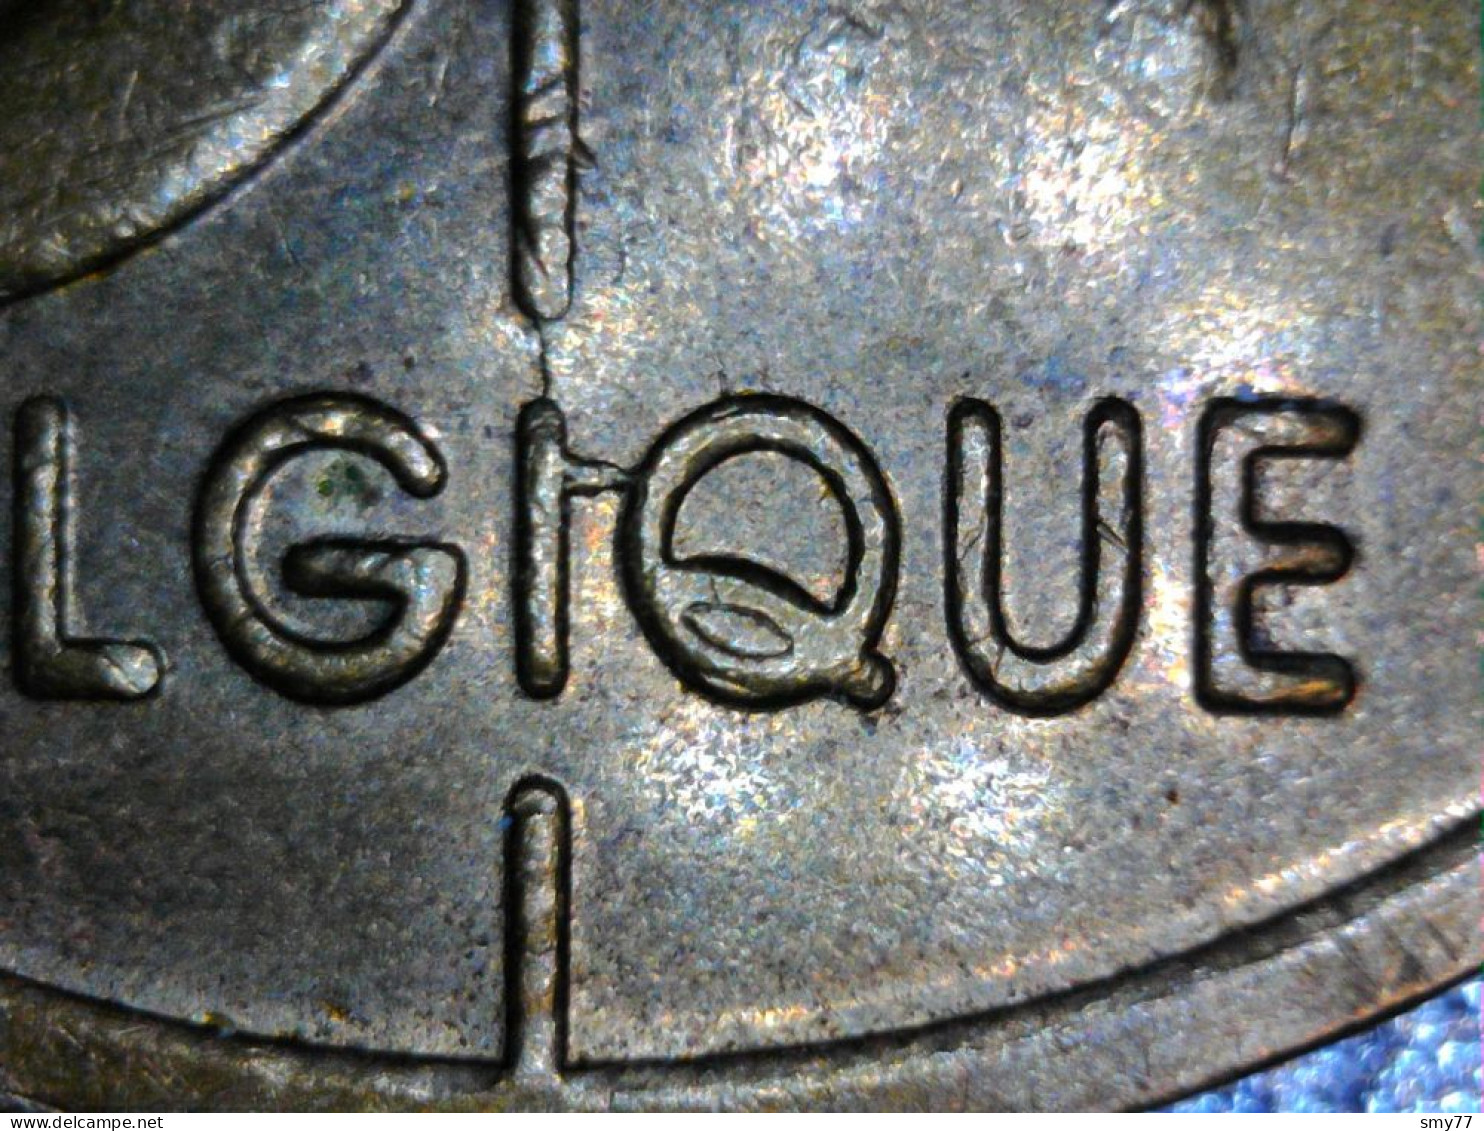 Belgique / Belgium ► Fautées - Error coins ◄ Lot 15x • See / voir détails & photos • [24-554]